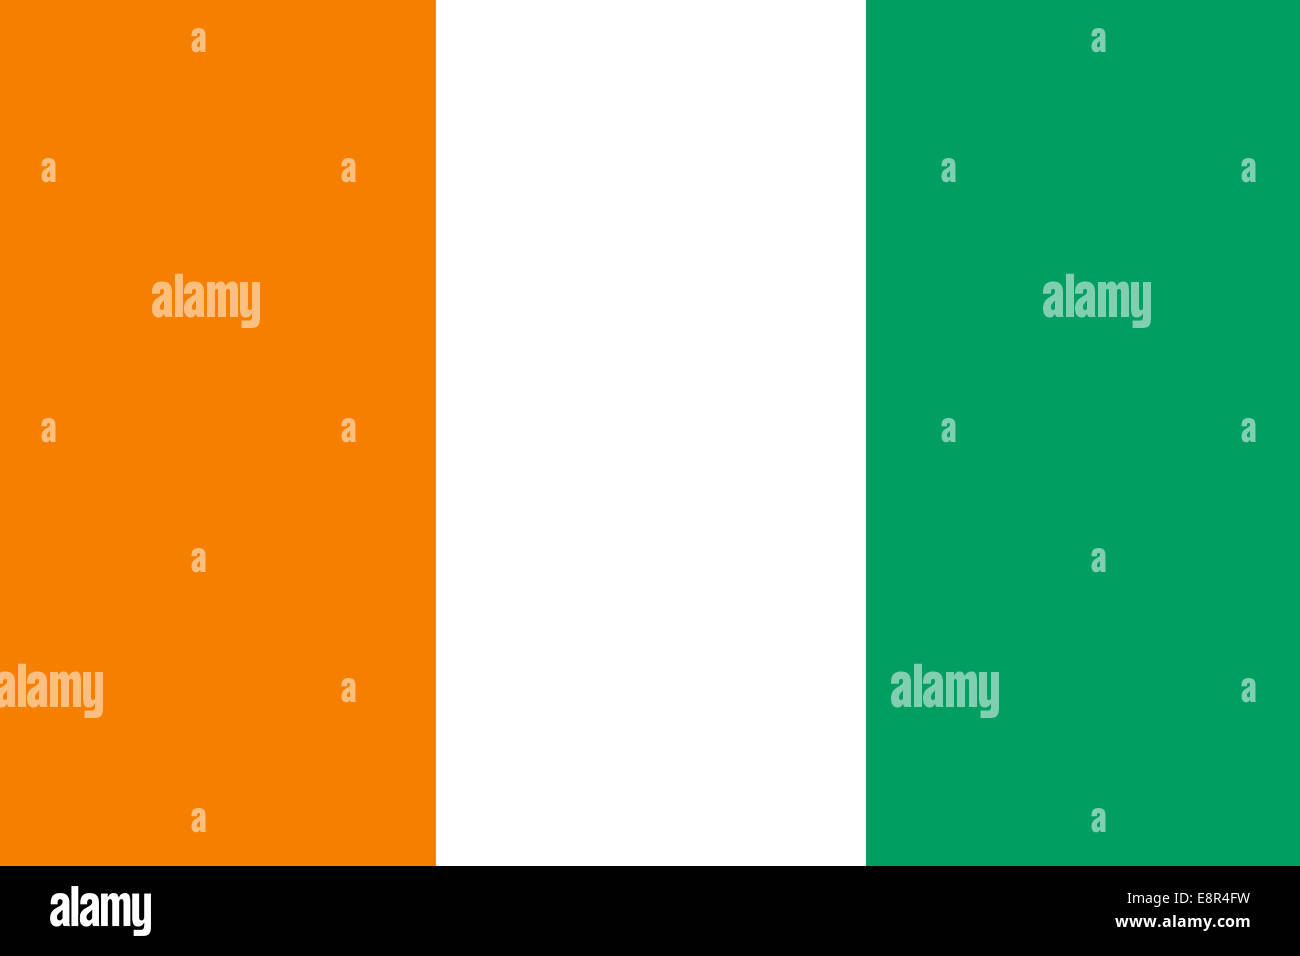 Flagge der Elfenbeinküste - Standardverhältnis der Elfenbeinküste - True RGB-Farbmodus Stockfoto